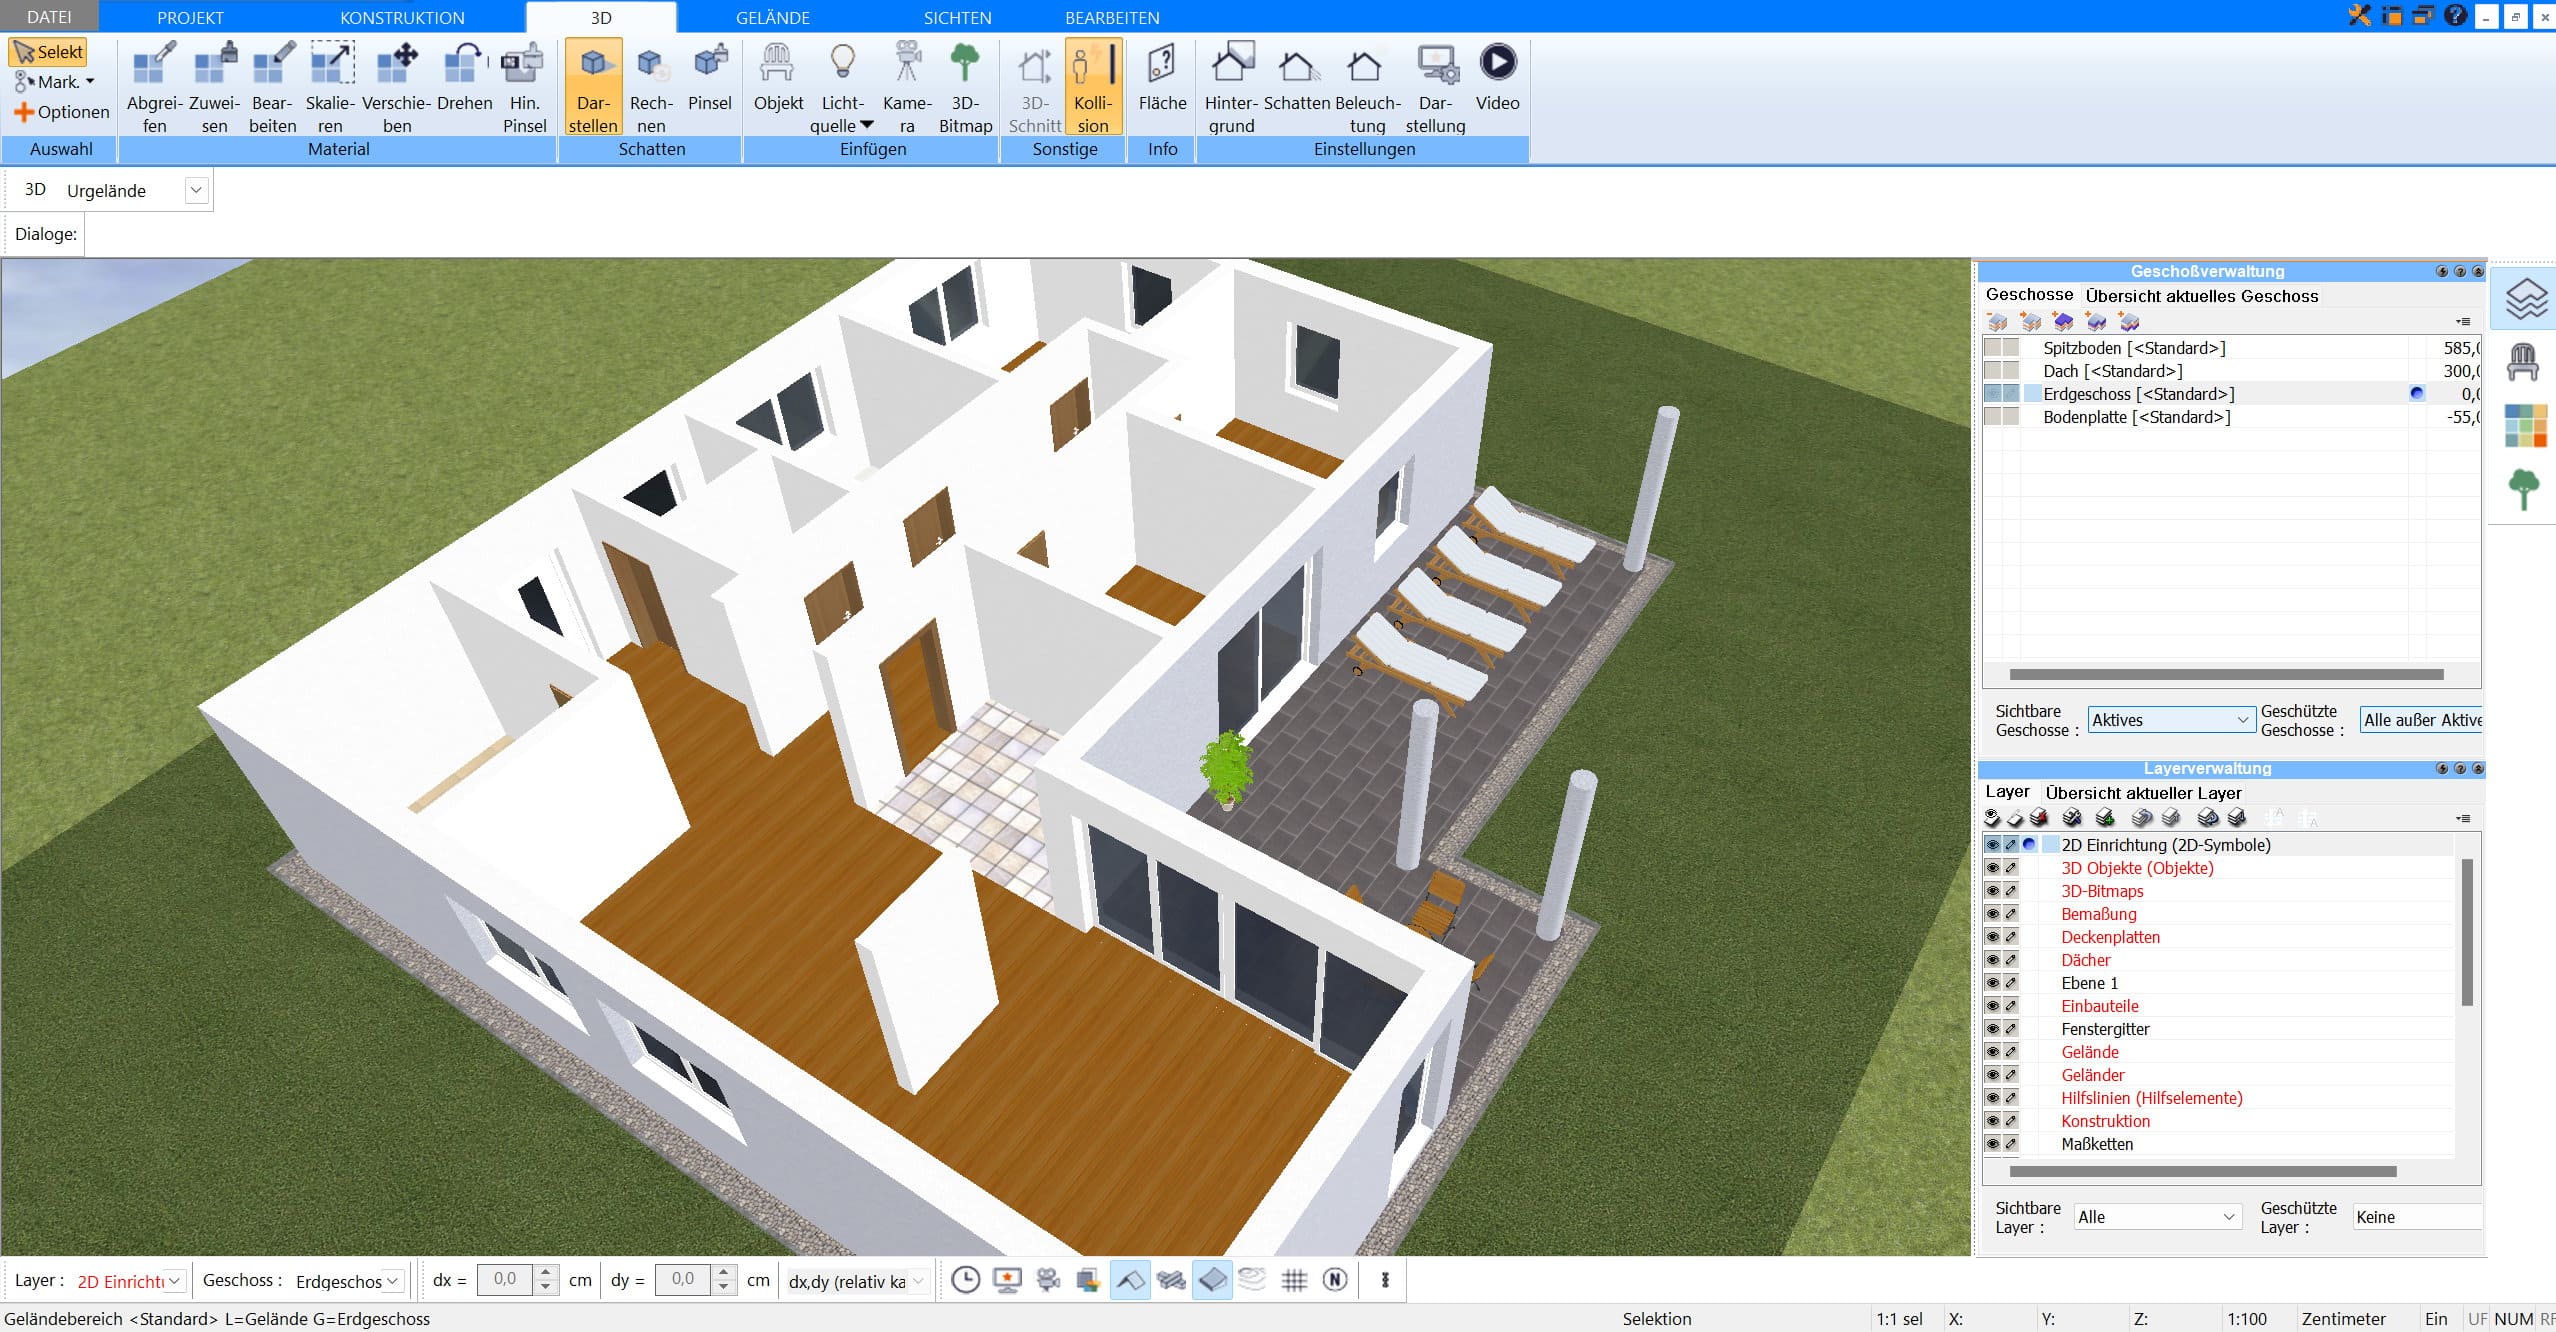 Räume können im Plan7Architekt sowohl in 2D als auch in 3D parallel geplant und bearbeitet werden